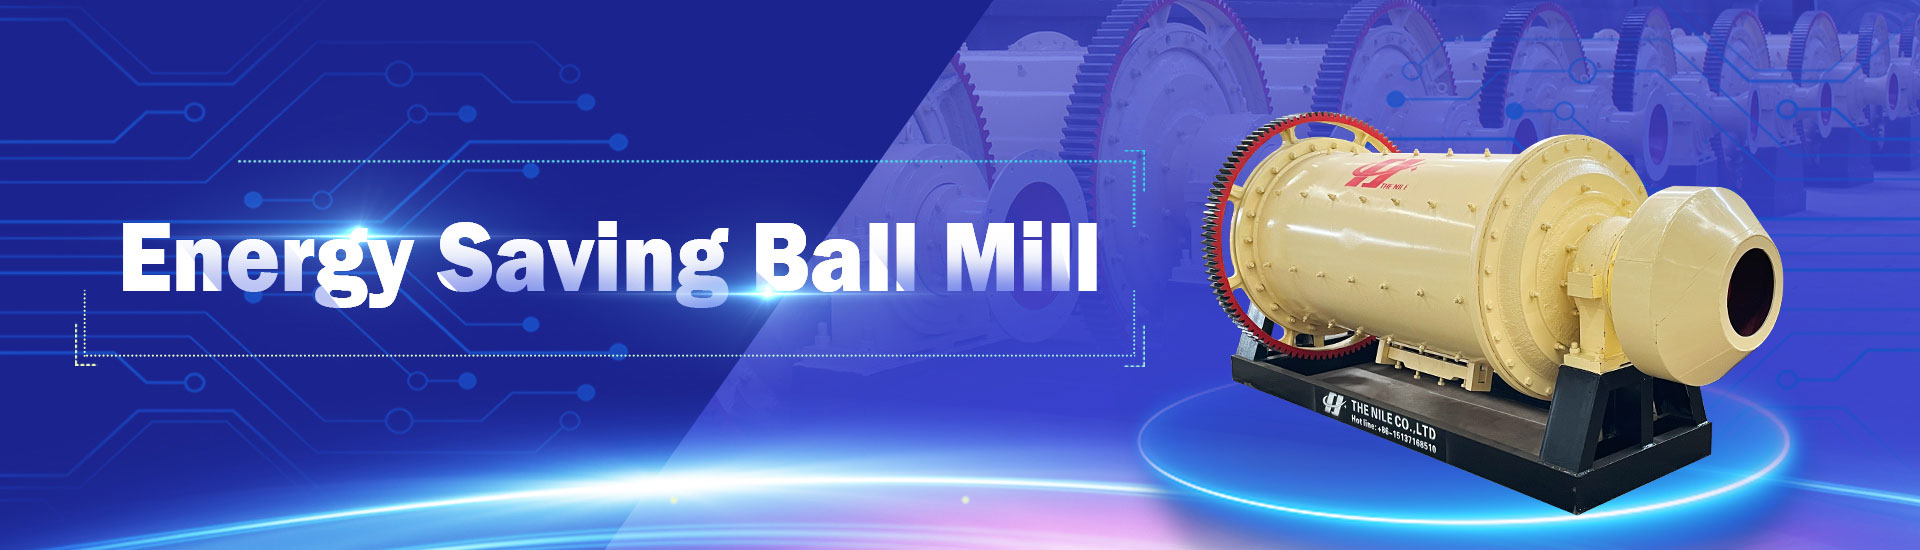 Energy saving ball mill